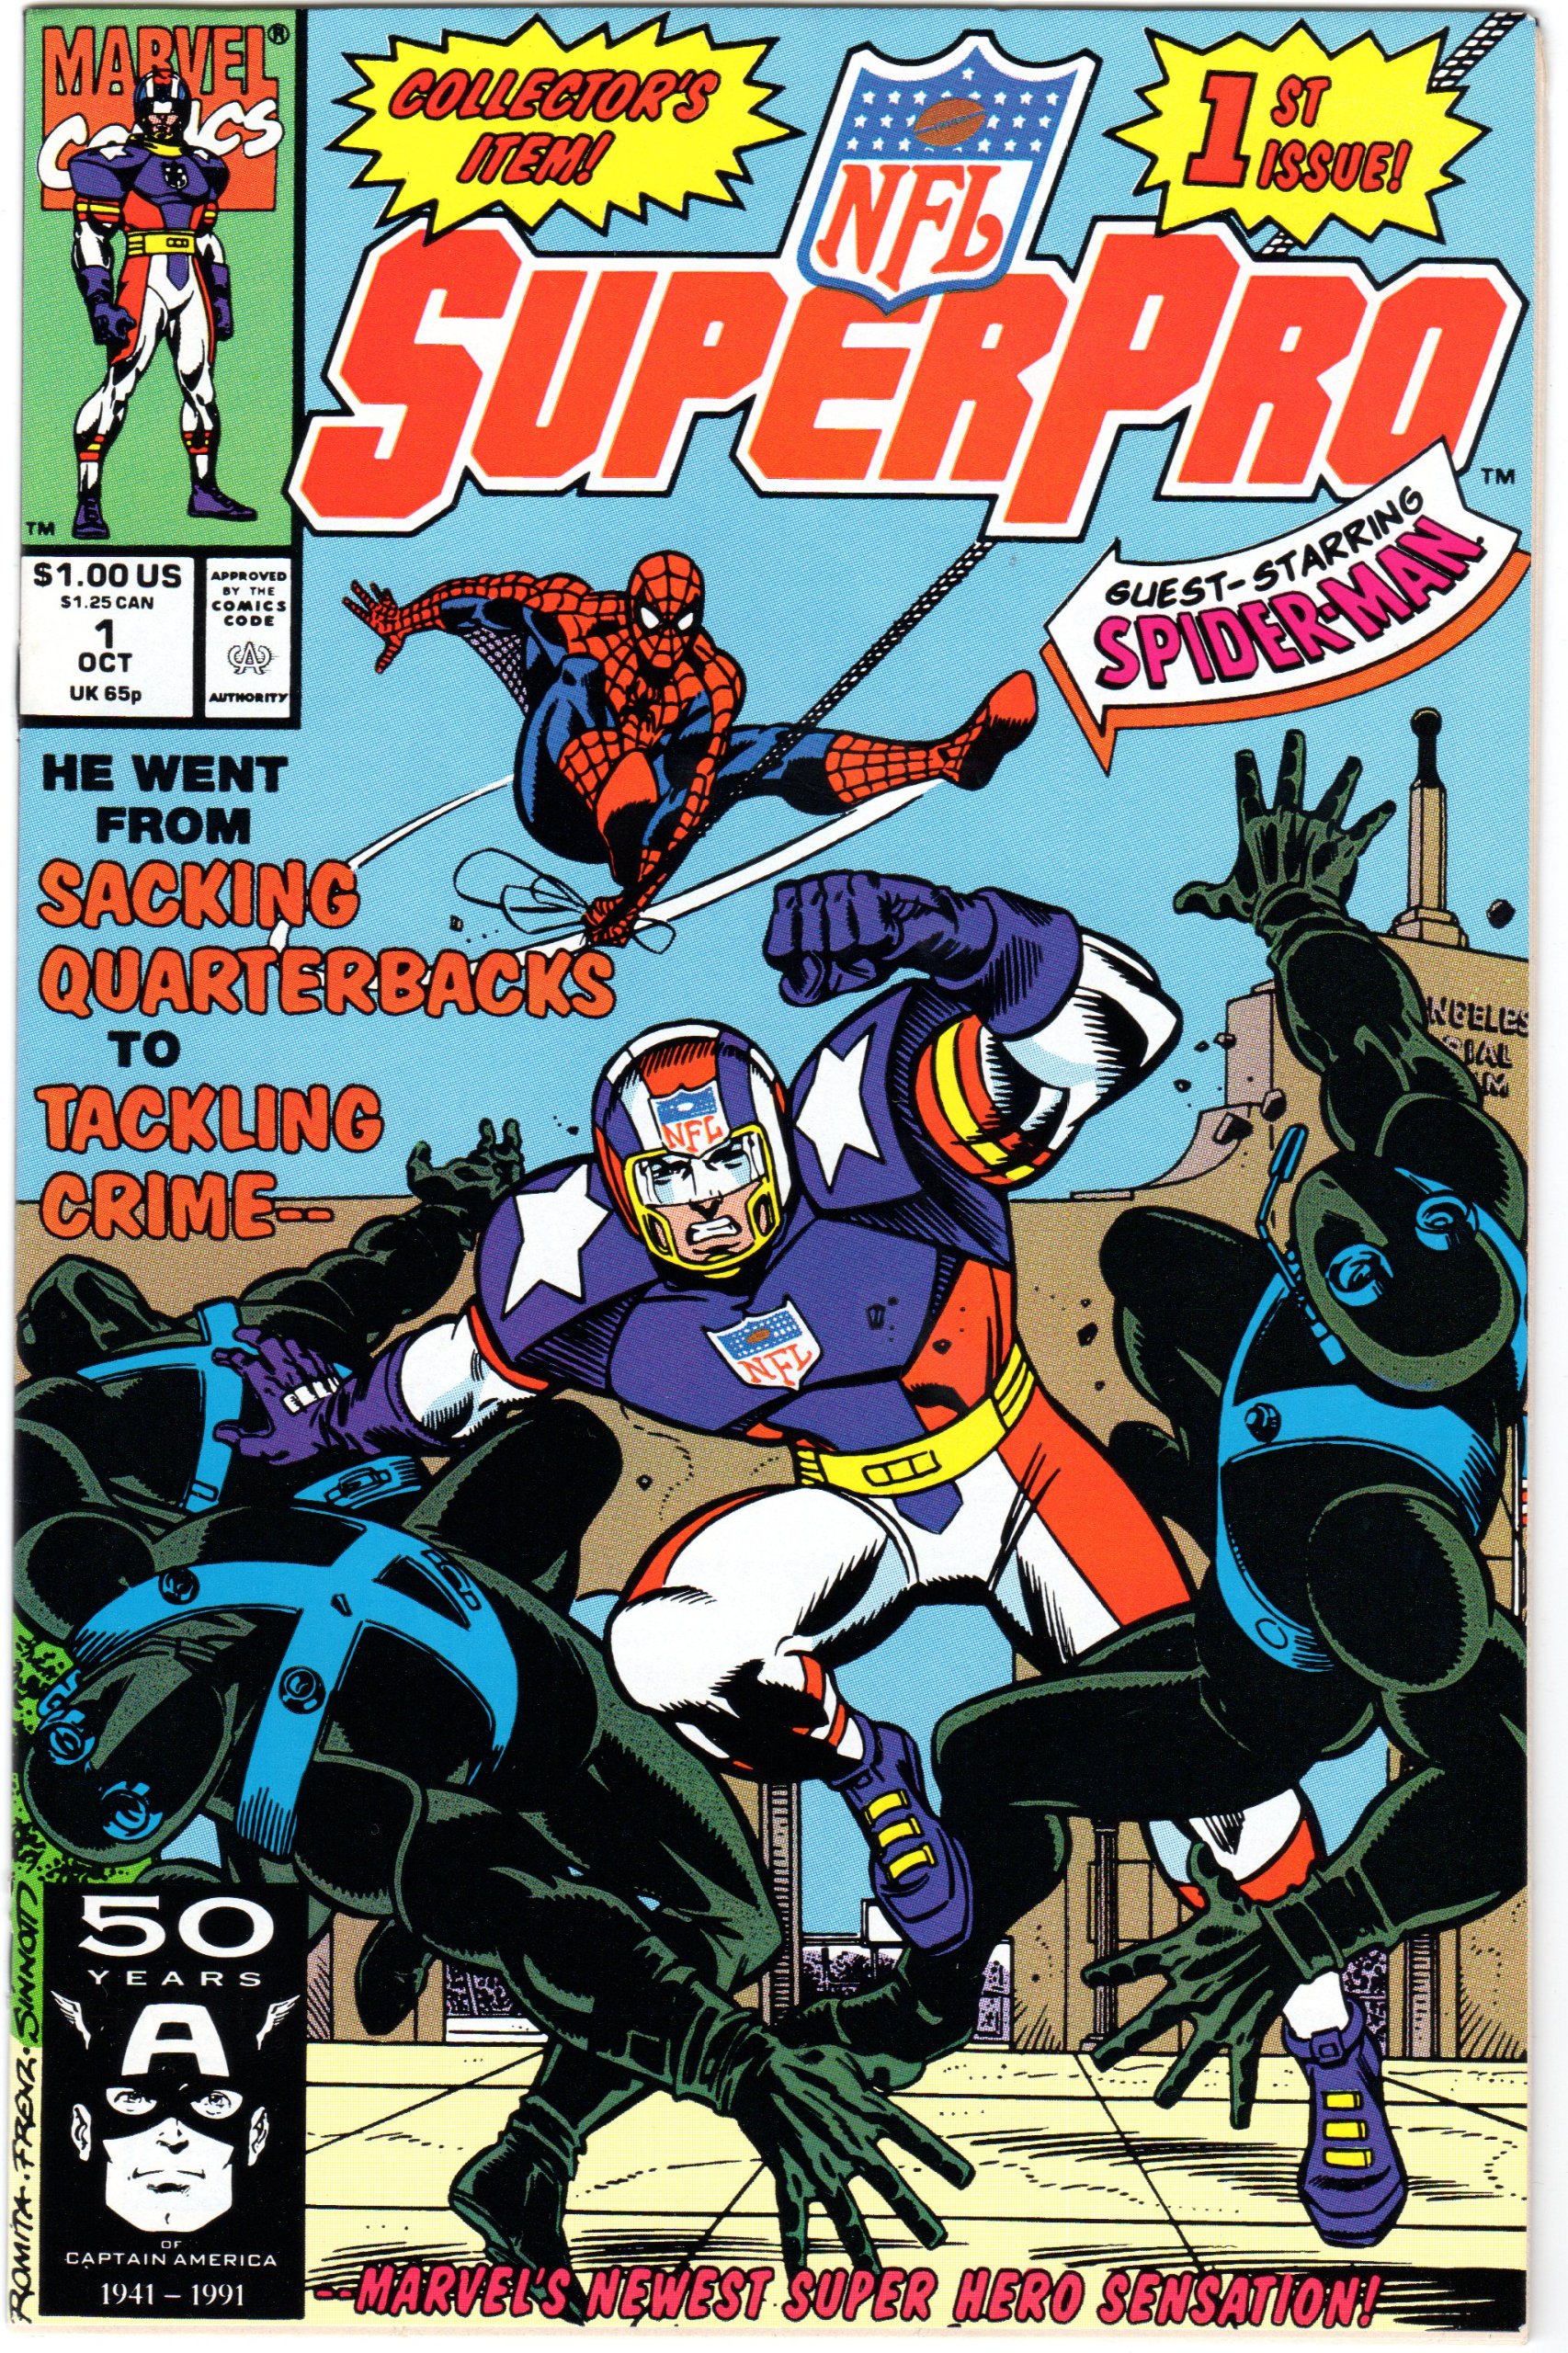 SuperPro, personaje creador por Marvel y la NFL